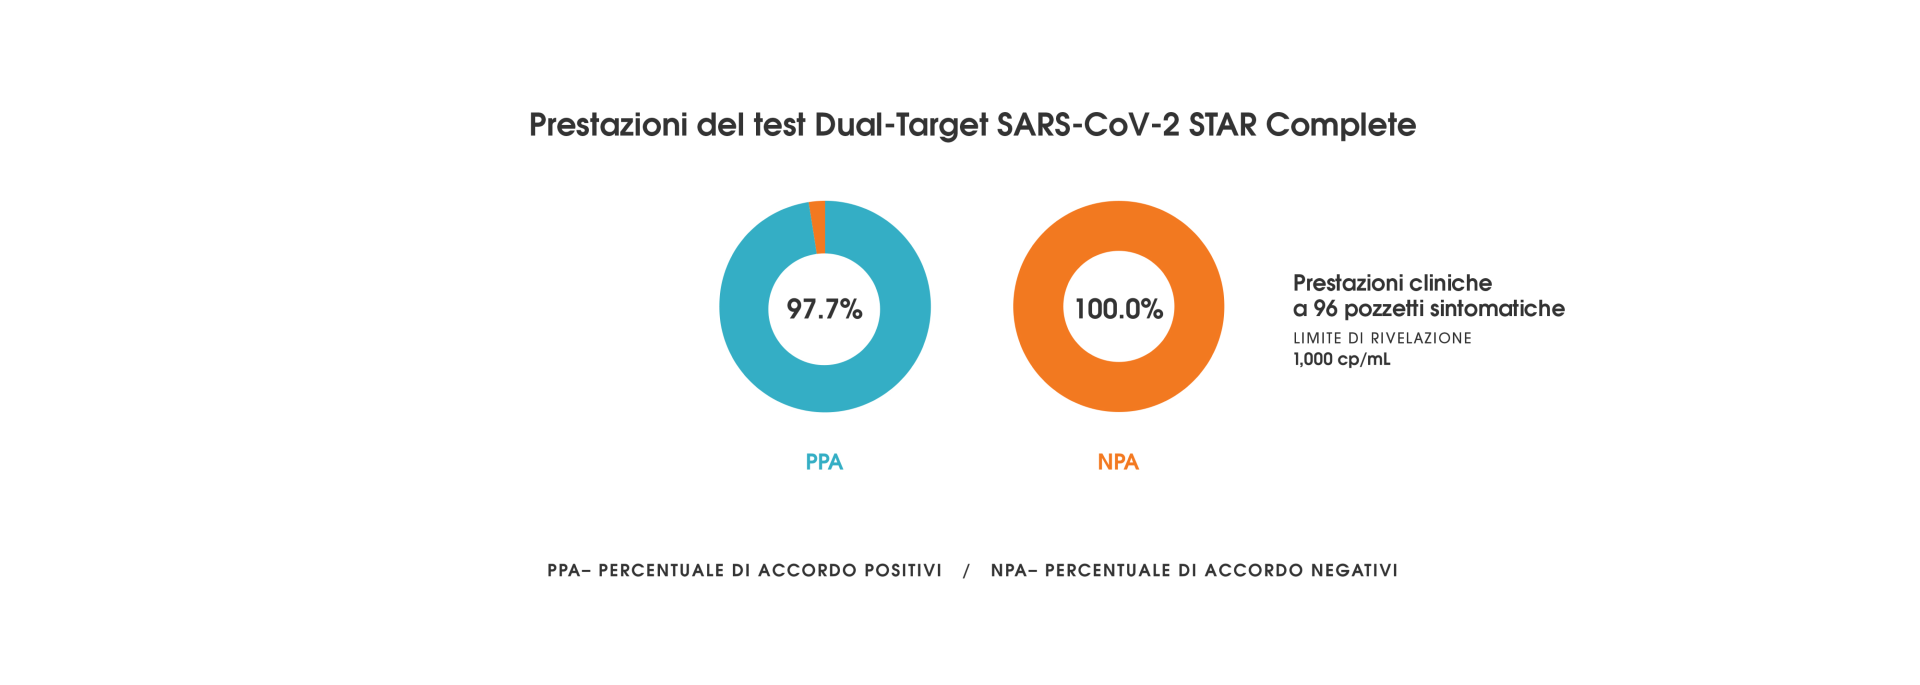 Dual-Target SARS-CoV-2 STAR Complete - Prestazioni del test